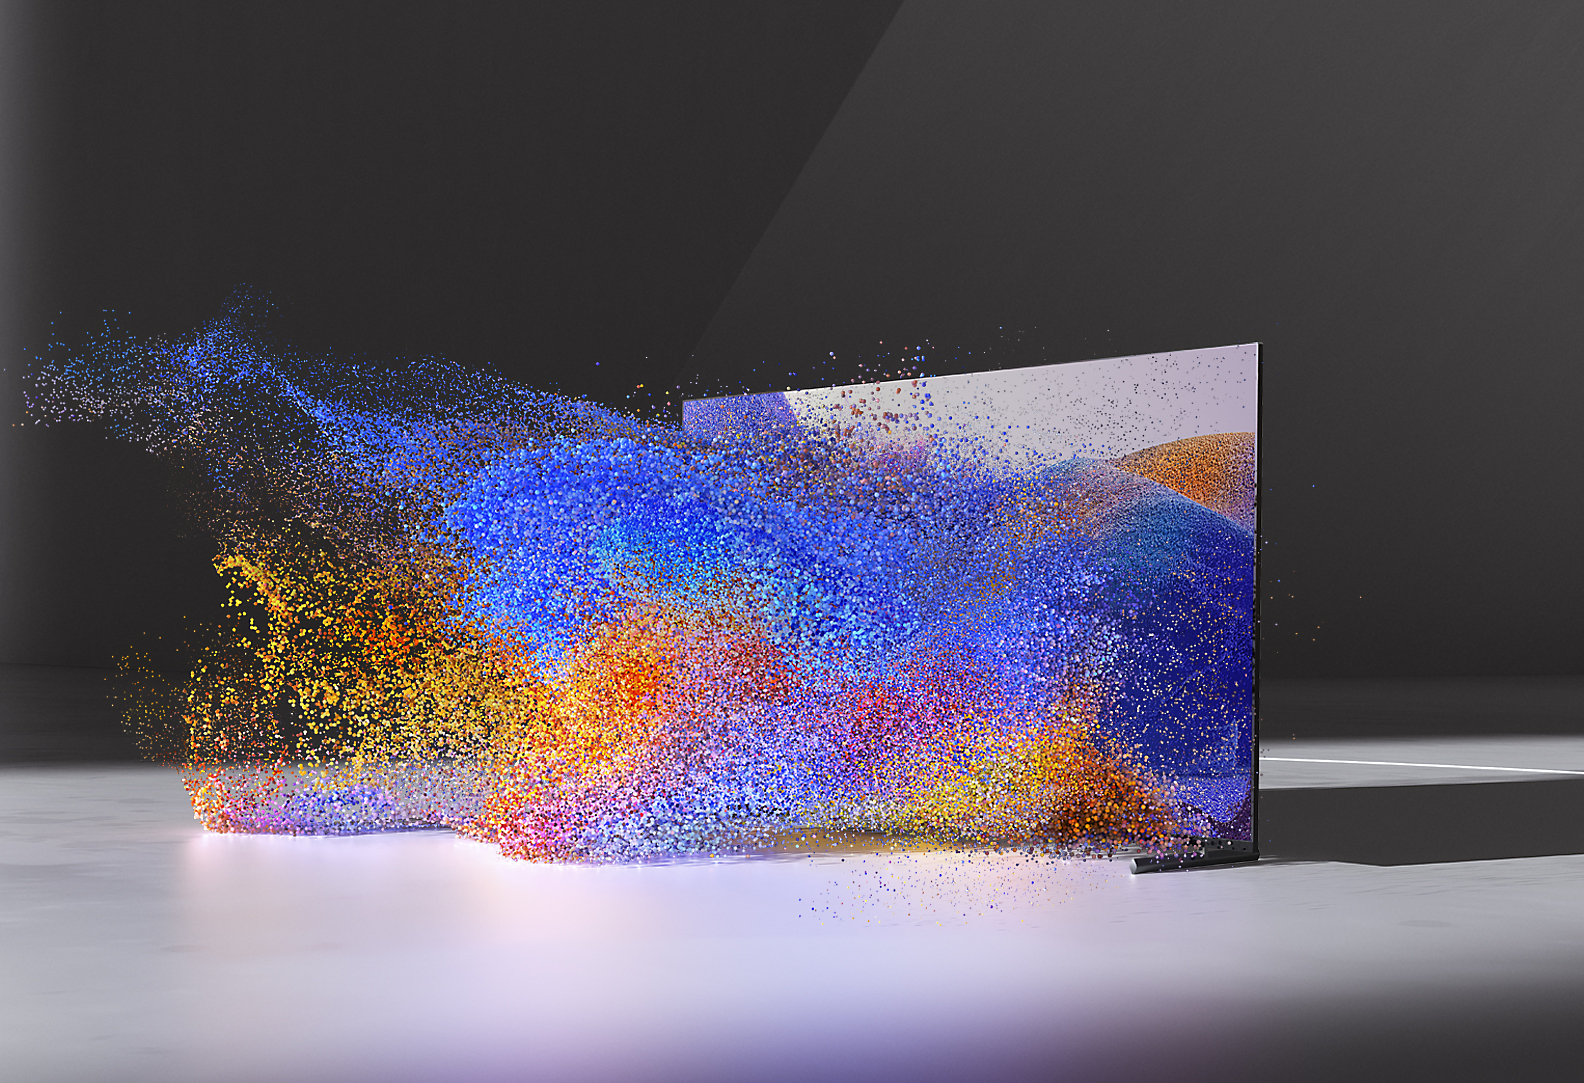 Televisión BRAVIA XR que muestra una imagen abstracta y colorida que pareciera salir de la pantalla en cascada